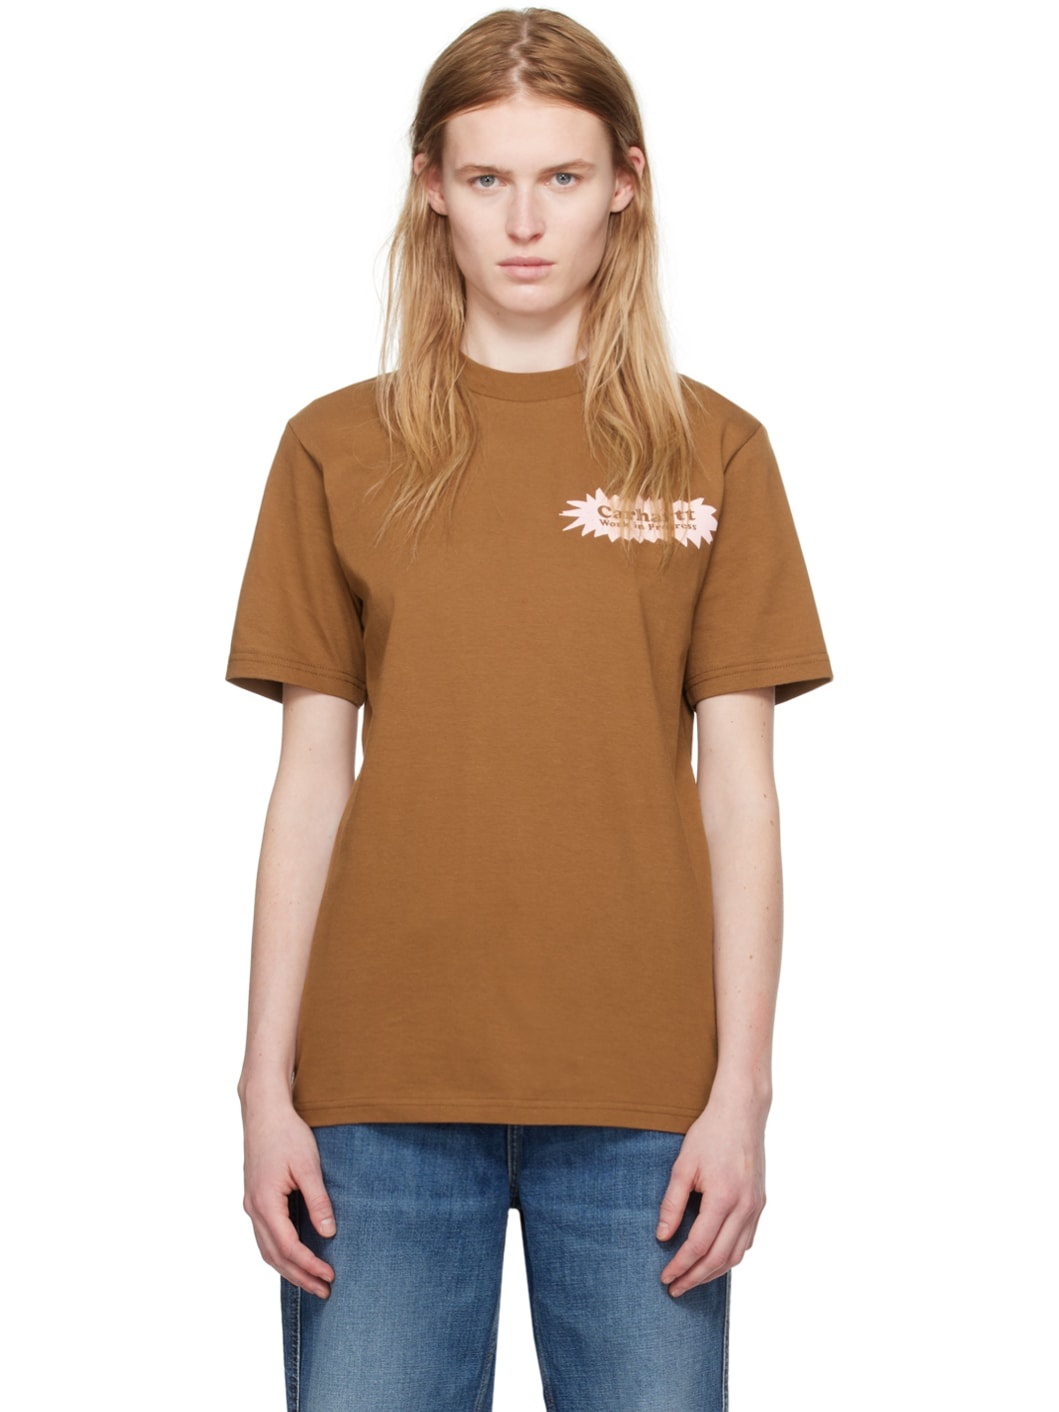 Brown Bam T-Shirt - 1